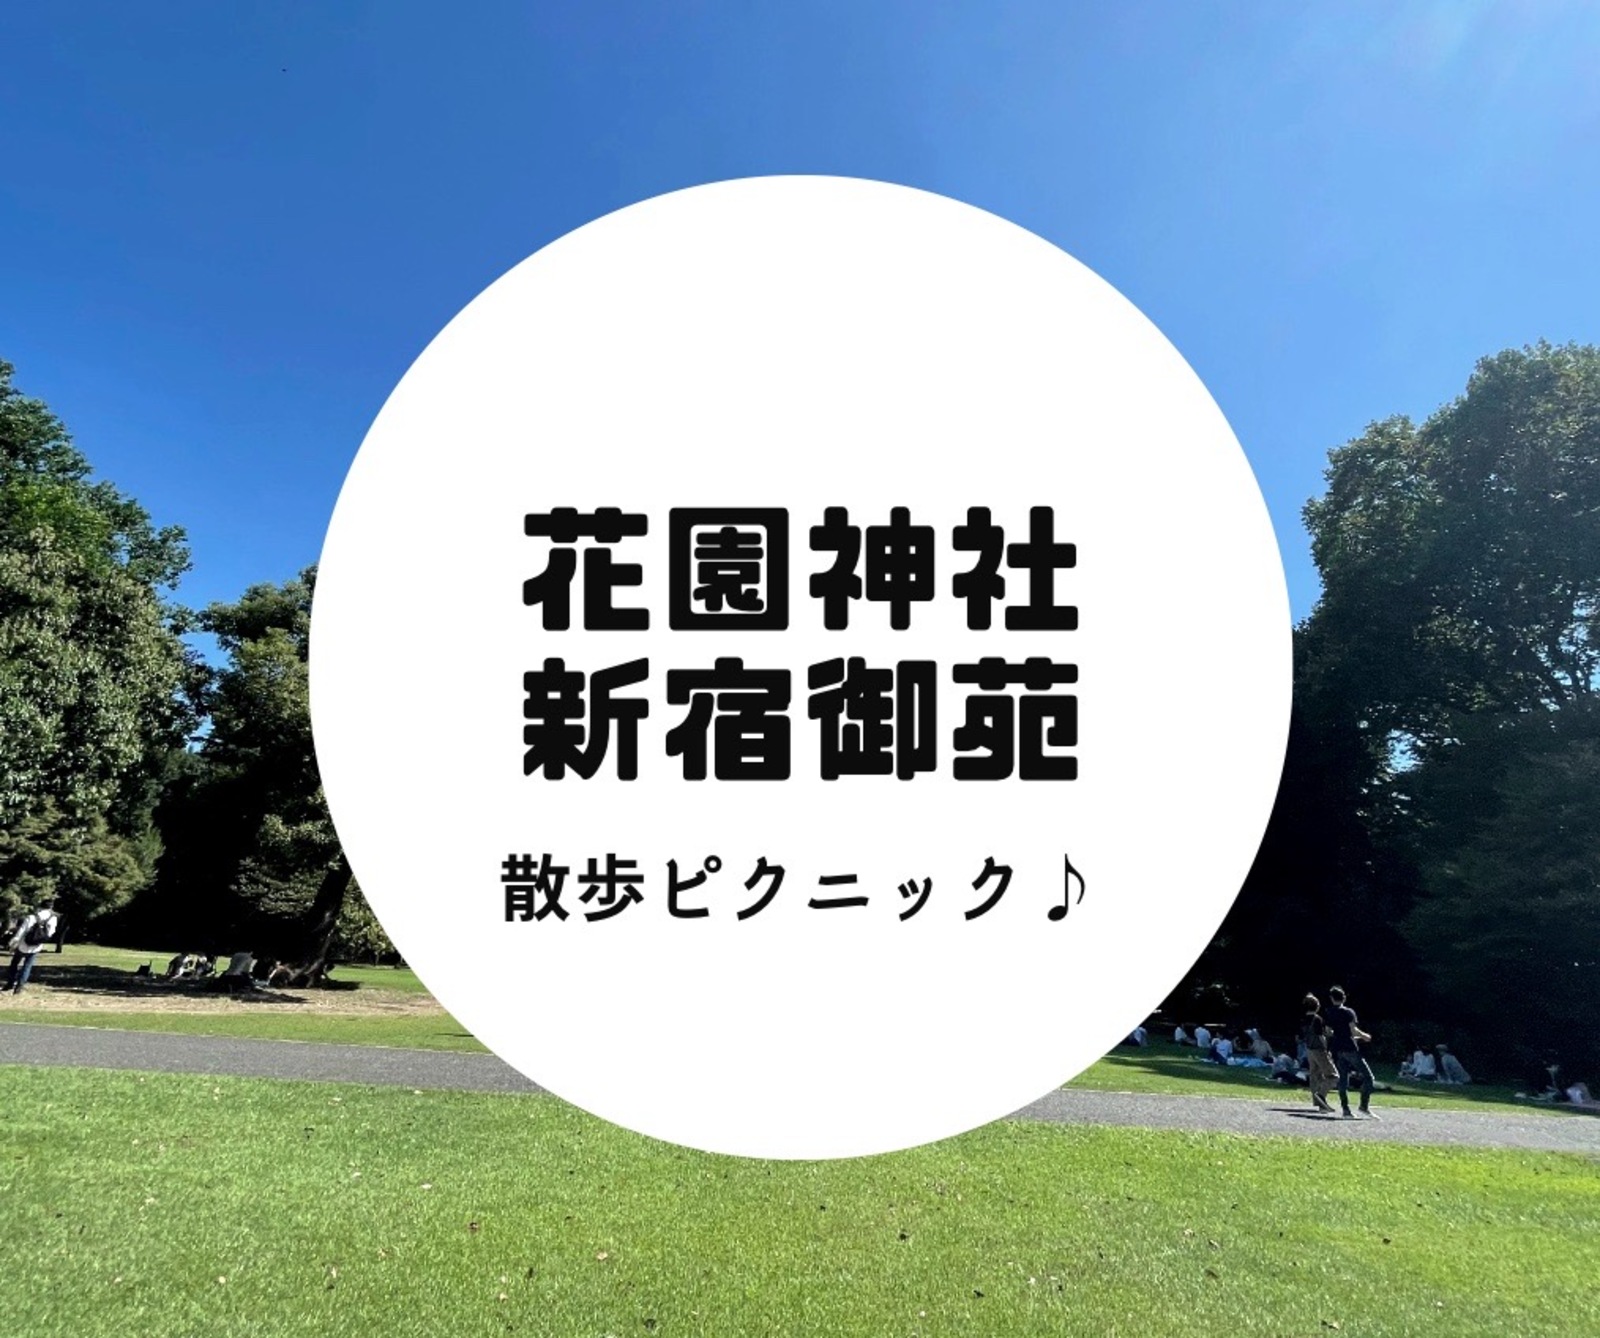 花園神社と新宿御苑散歩ピクニック